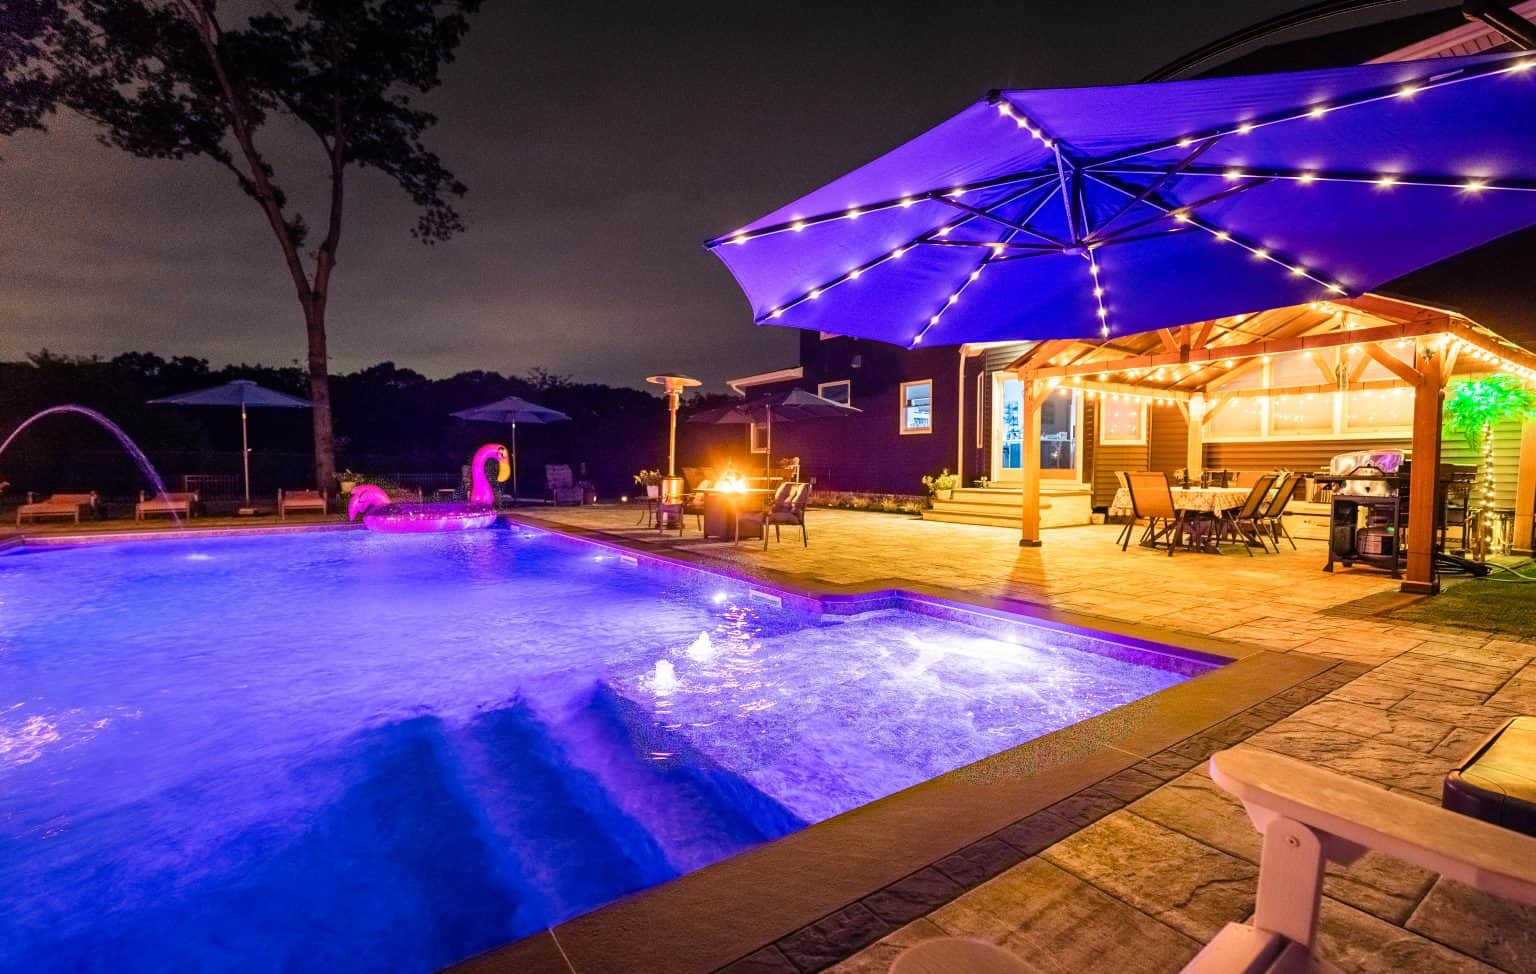 inground pool in yard at night.